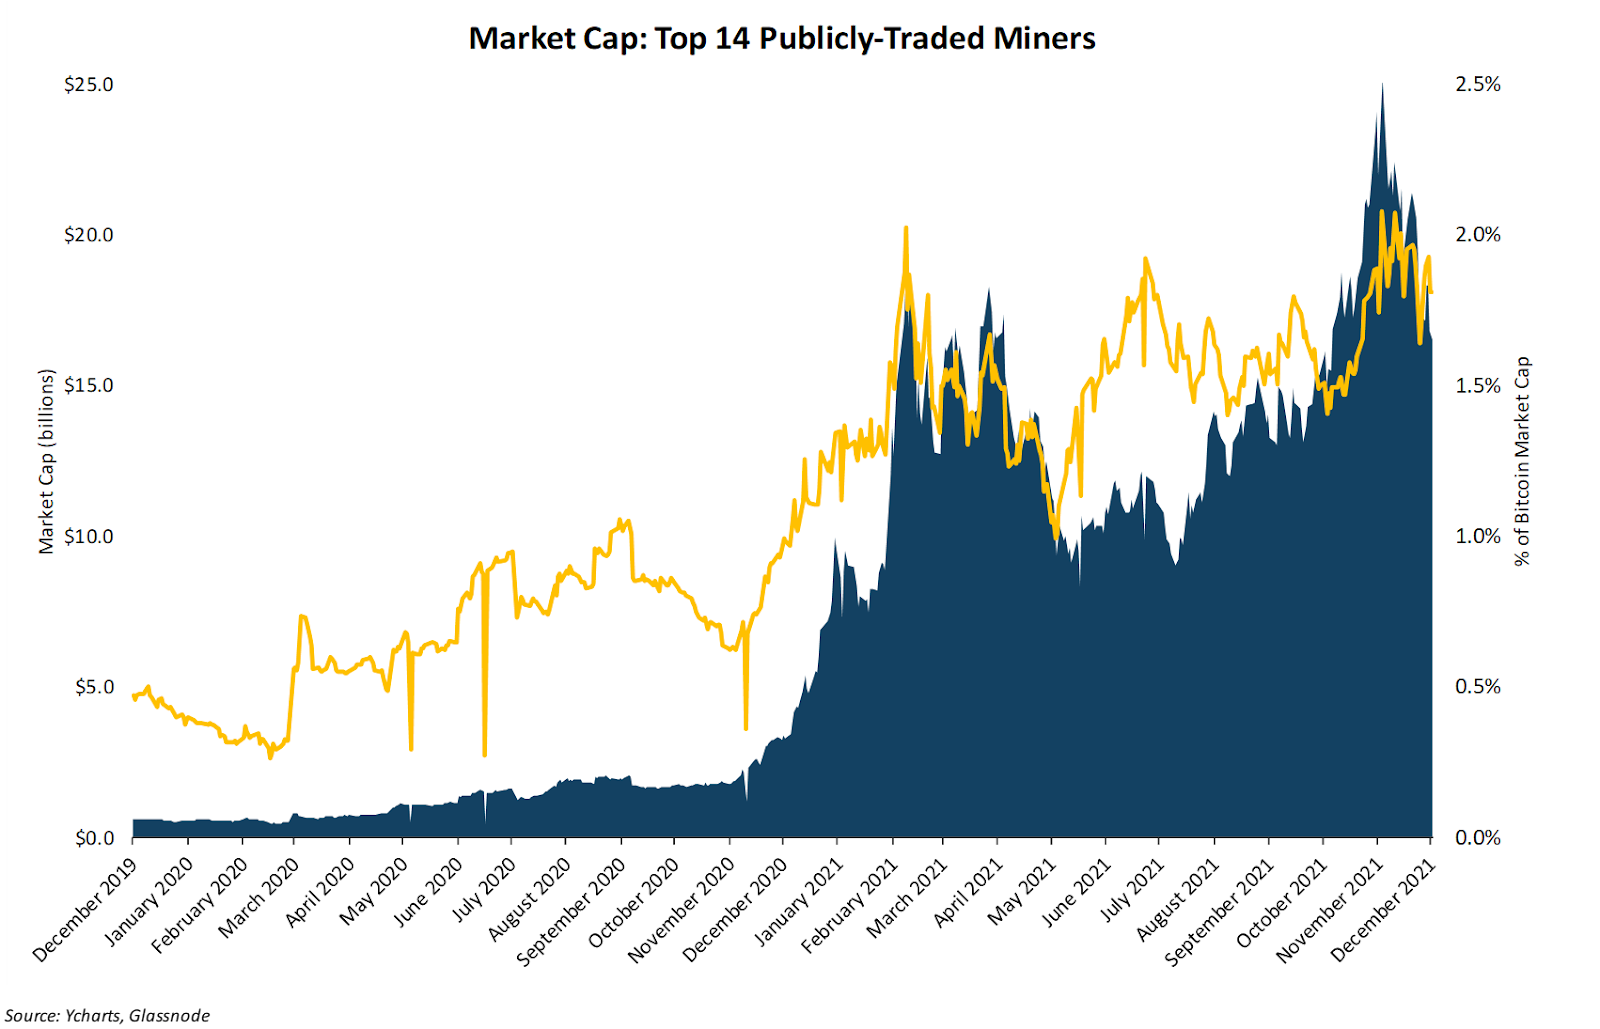 Top Bitcoin mining companies by P/E ratio